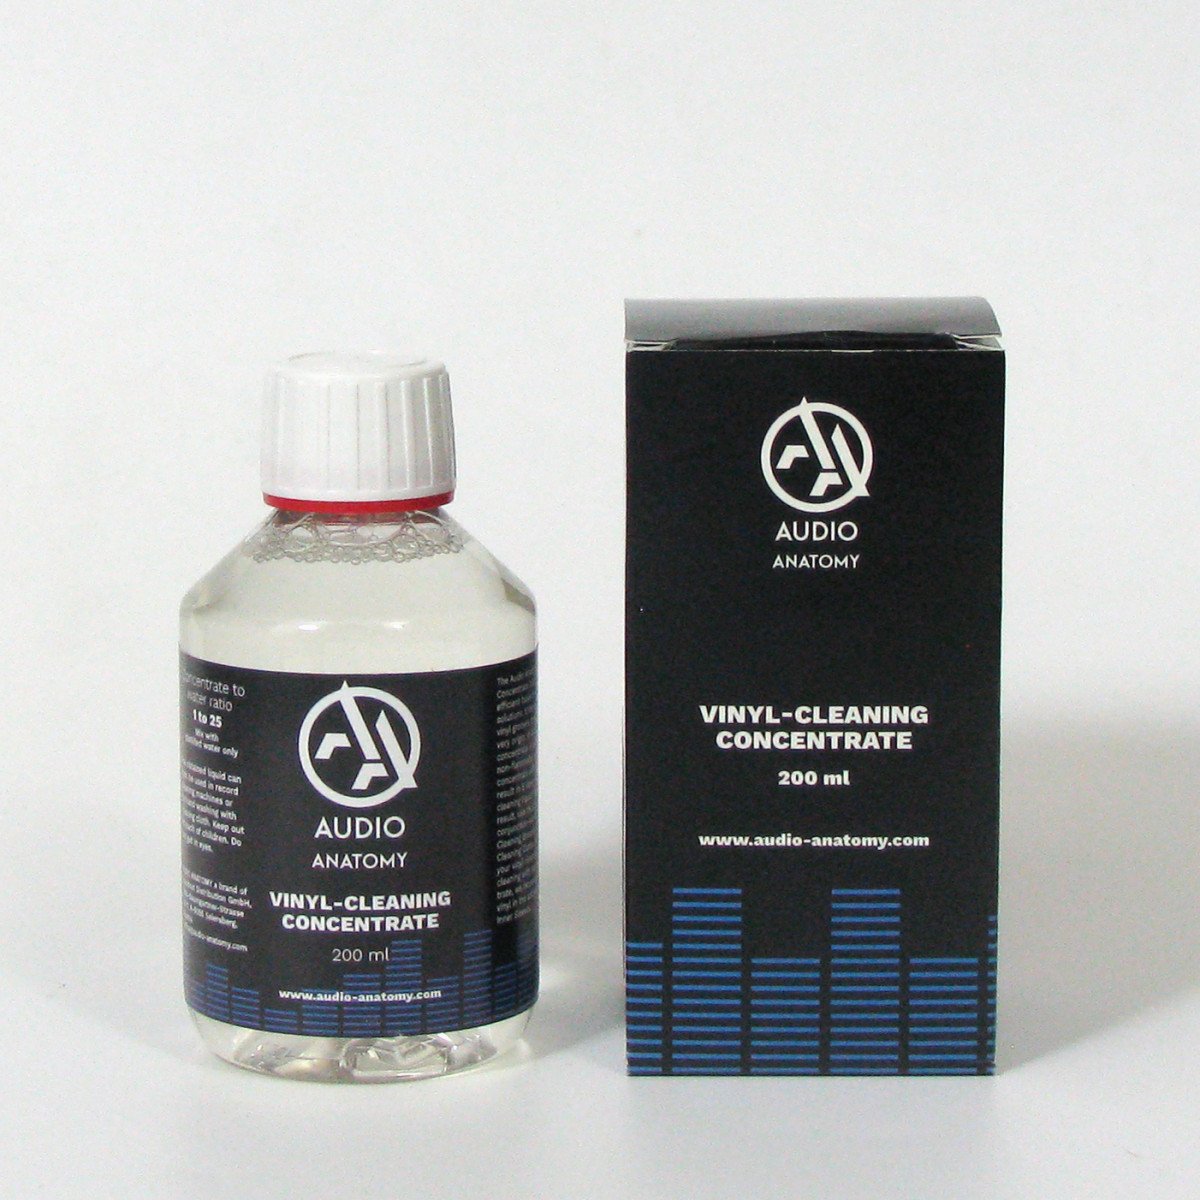 Жидкость-концентрат для чистки пластинок Audio Anatomy Vinyl-Cleaning фото